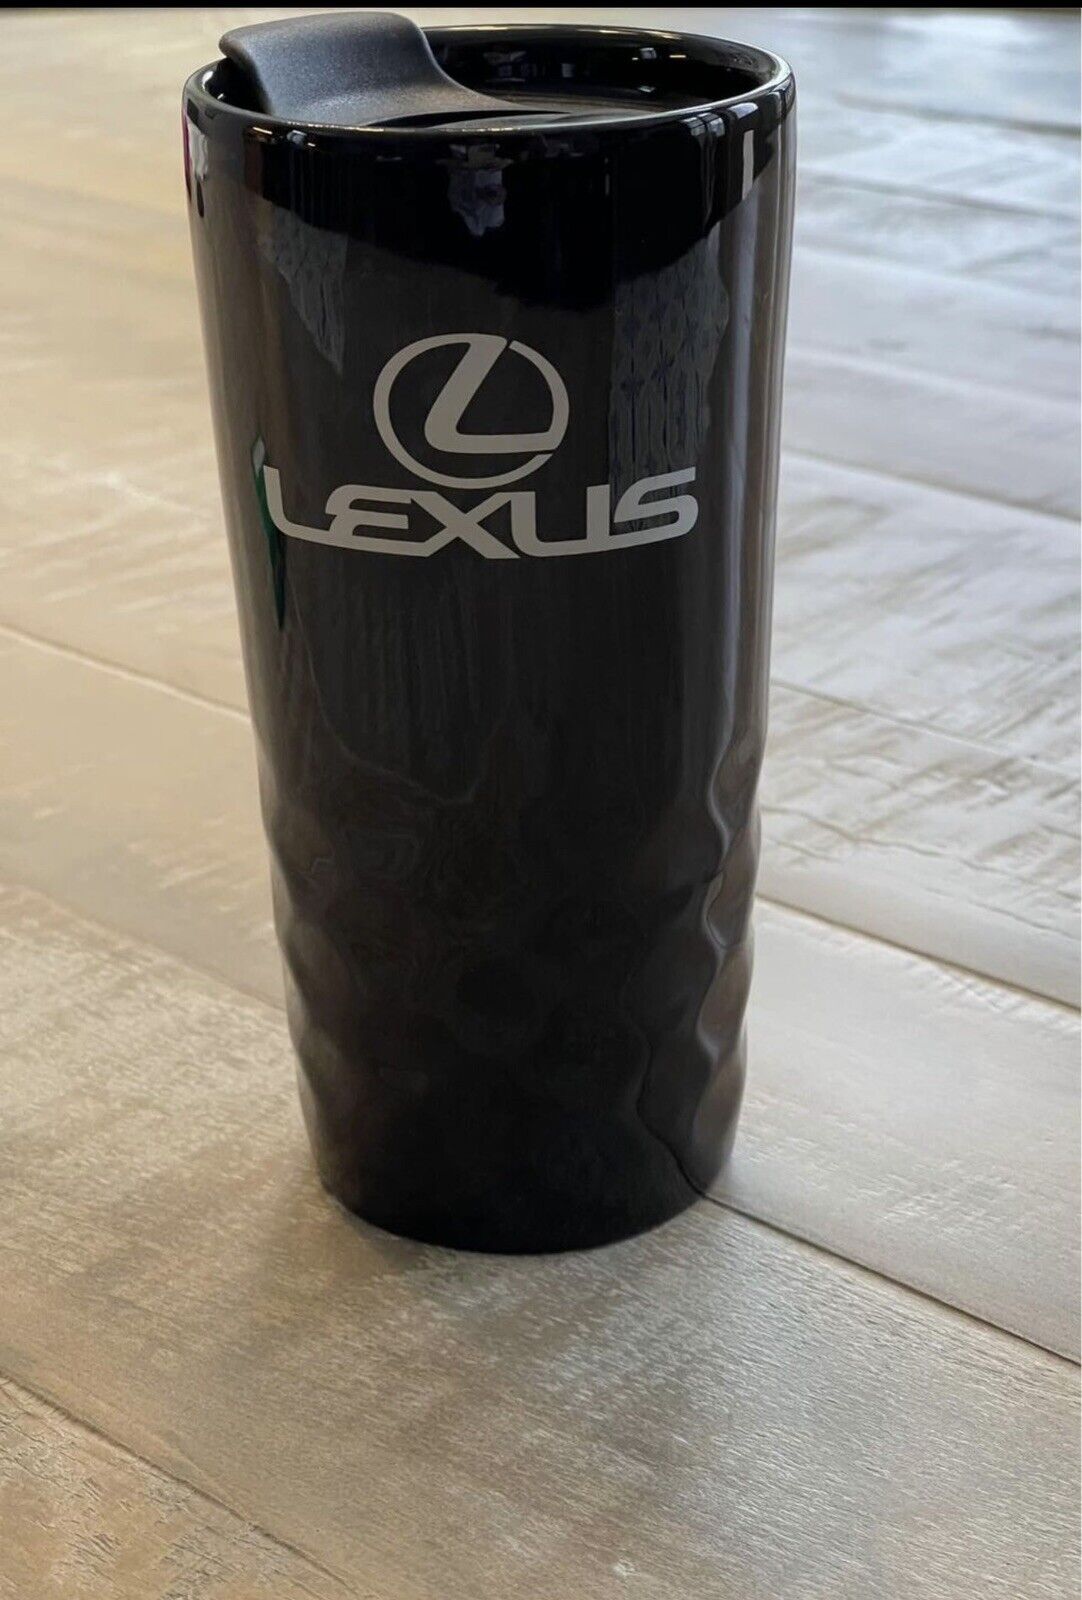 LEXUS Automobile H2GO Salerno Ceramic Black Tumbler Advertising Coffee Mug 15.2